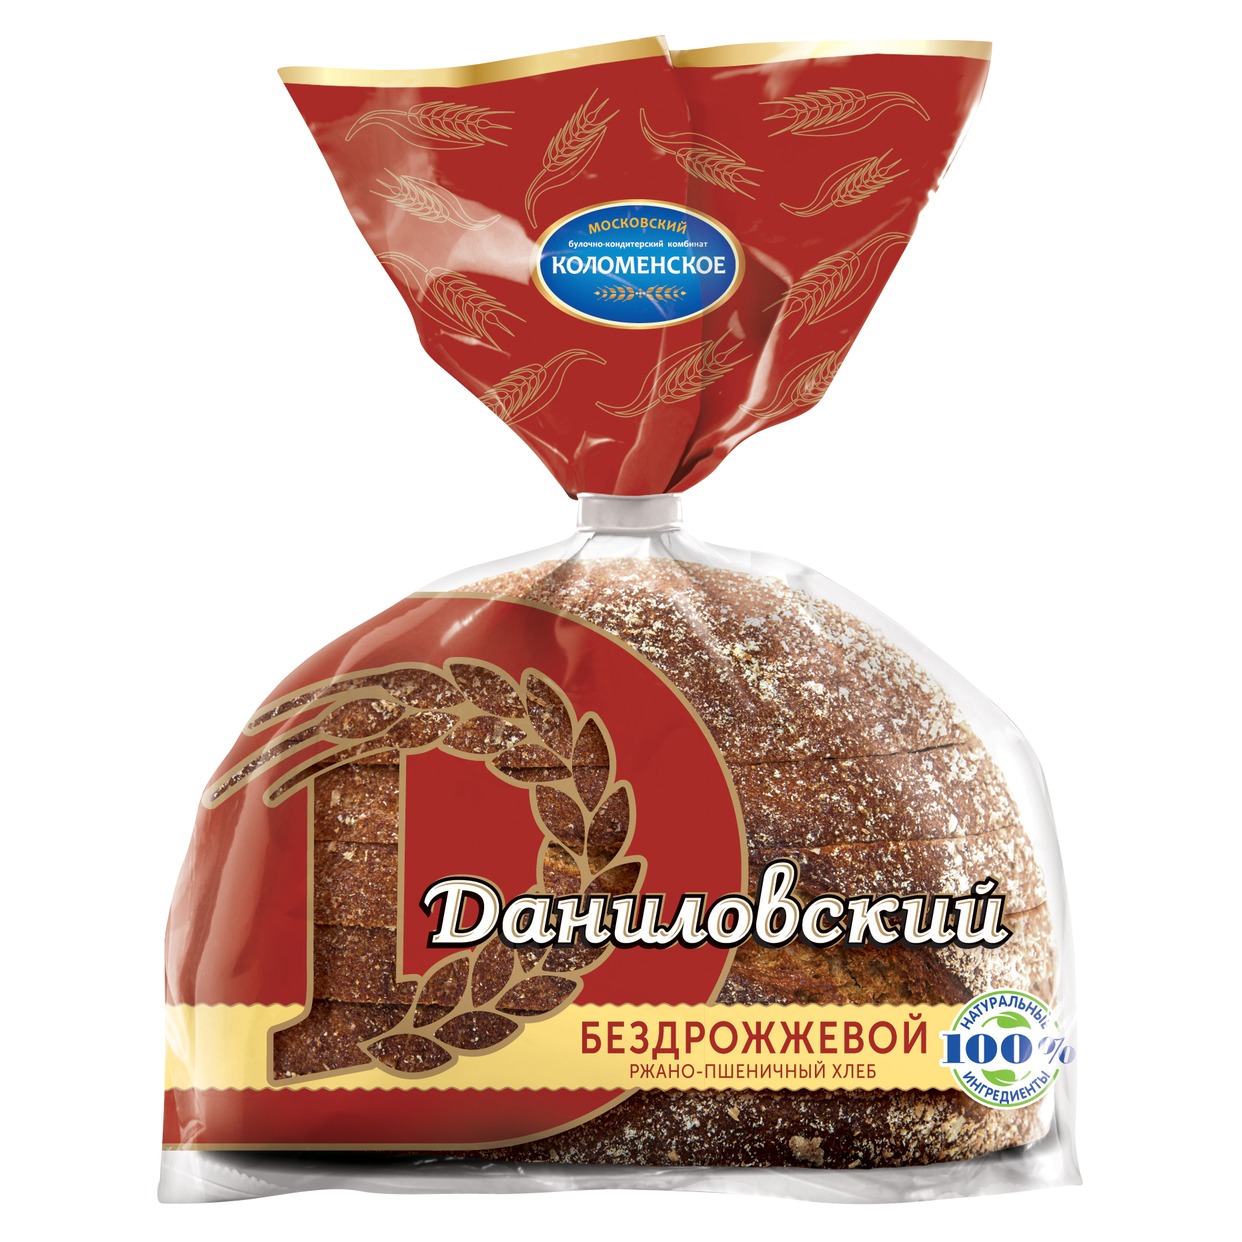 Хлеб Ржано-пшеничный, Даниловский, 300 г по акции в Пятерочке